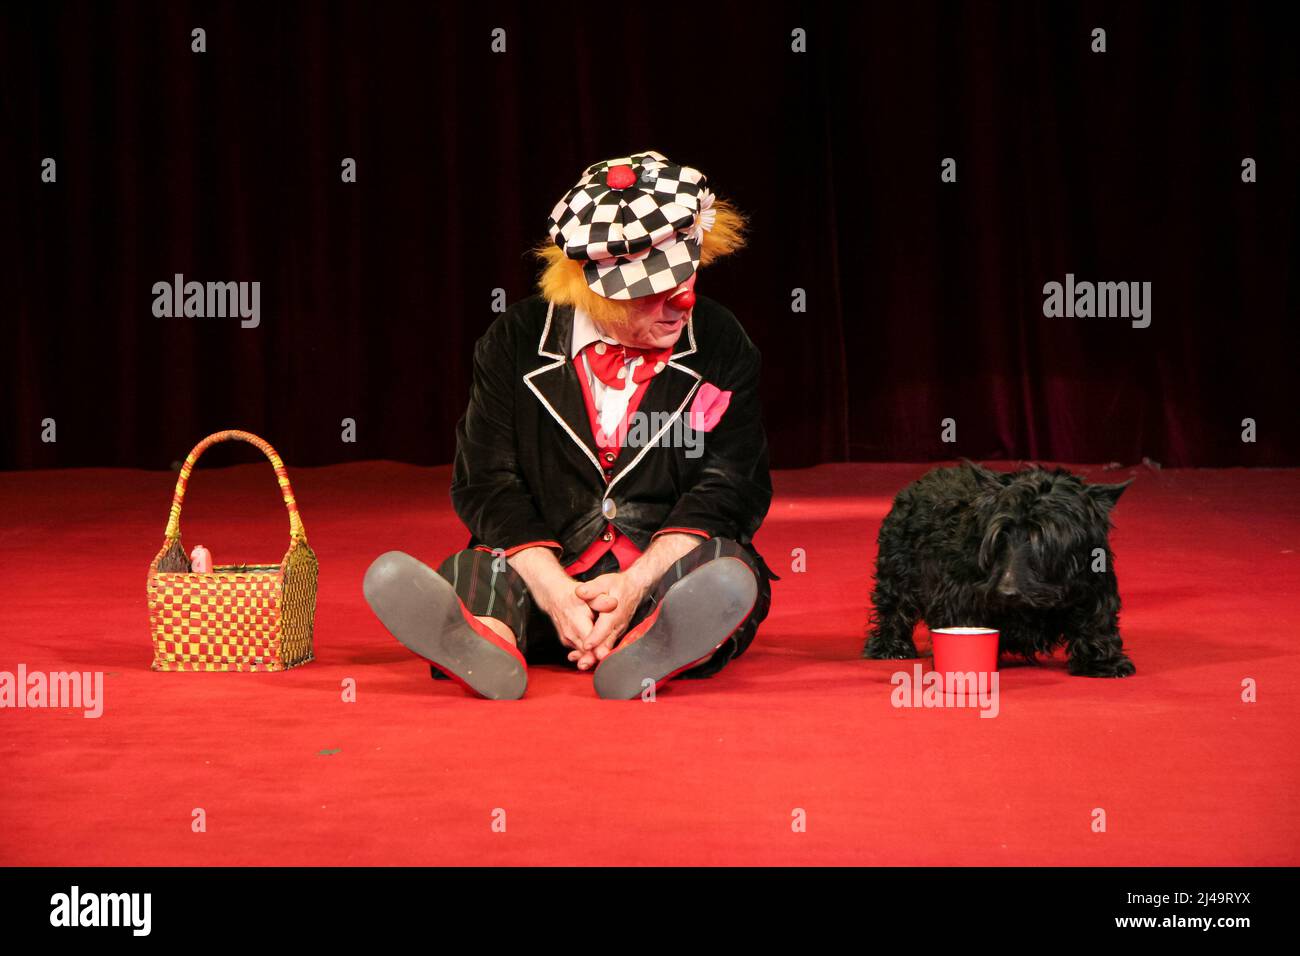 Oleg Popov (1930-2016), célèbre clown russe, mime et artiste de cirque, interprète en costume d'Ivanuska un pique-nique avec son chien au cirque d'État russe à Wetzlar, en Allemagne. 13th mars 2008. Crédit: Christian Lademann / LademannMedia Banque D'Images